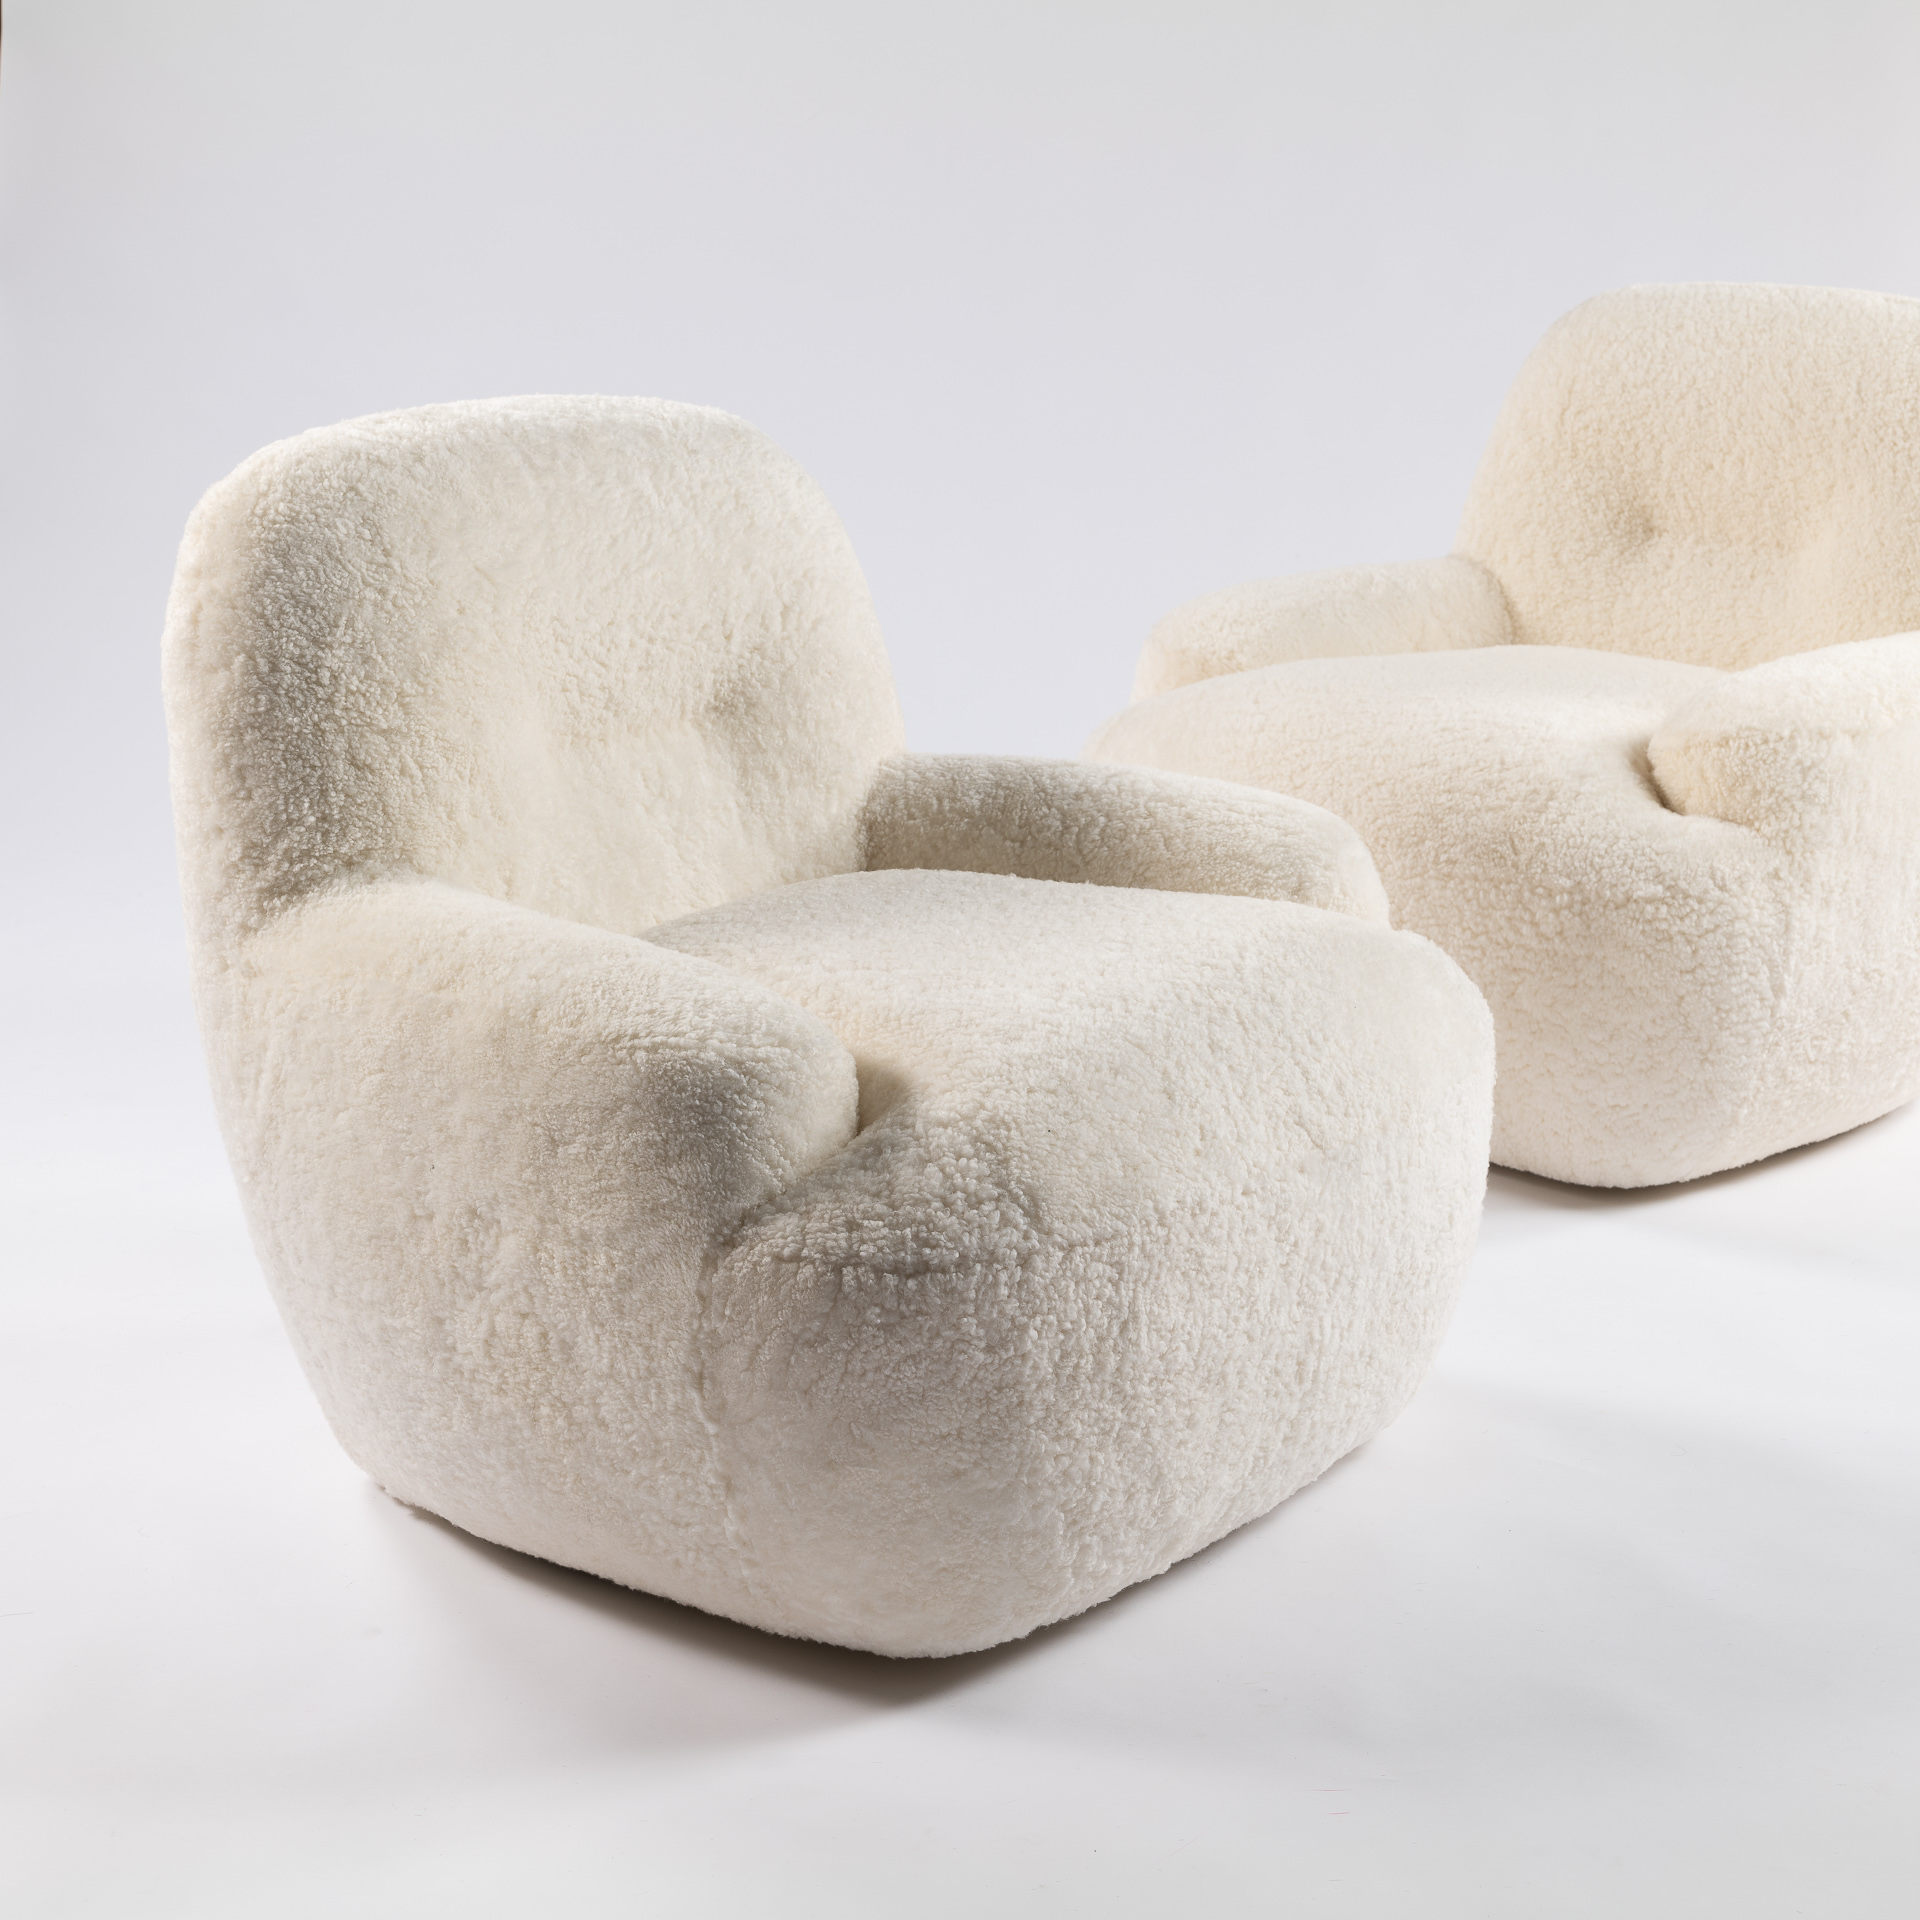 Décoration luxueuse avec ce fauteuil blanc au design très contemporain, au confort incroyable. Un recouvrement en agneau au luxe discret, la french touch dans toute sa speldeur